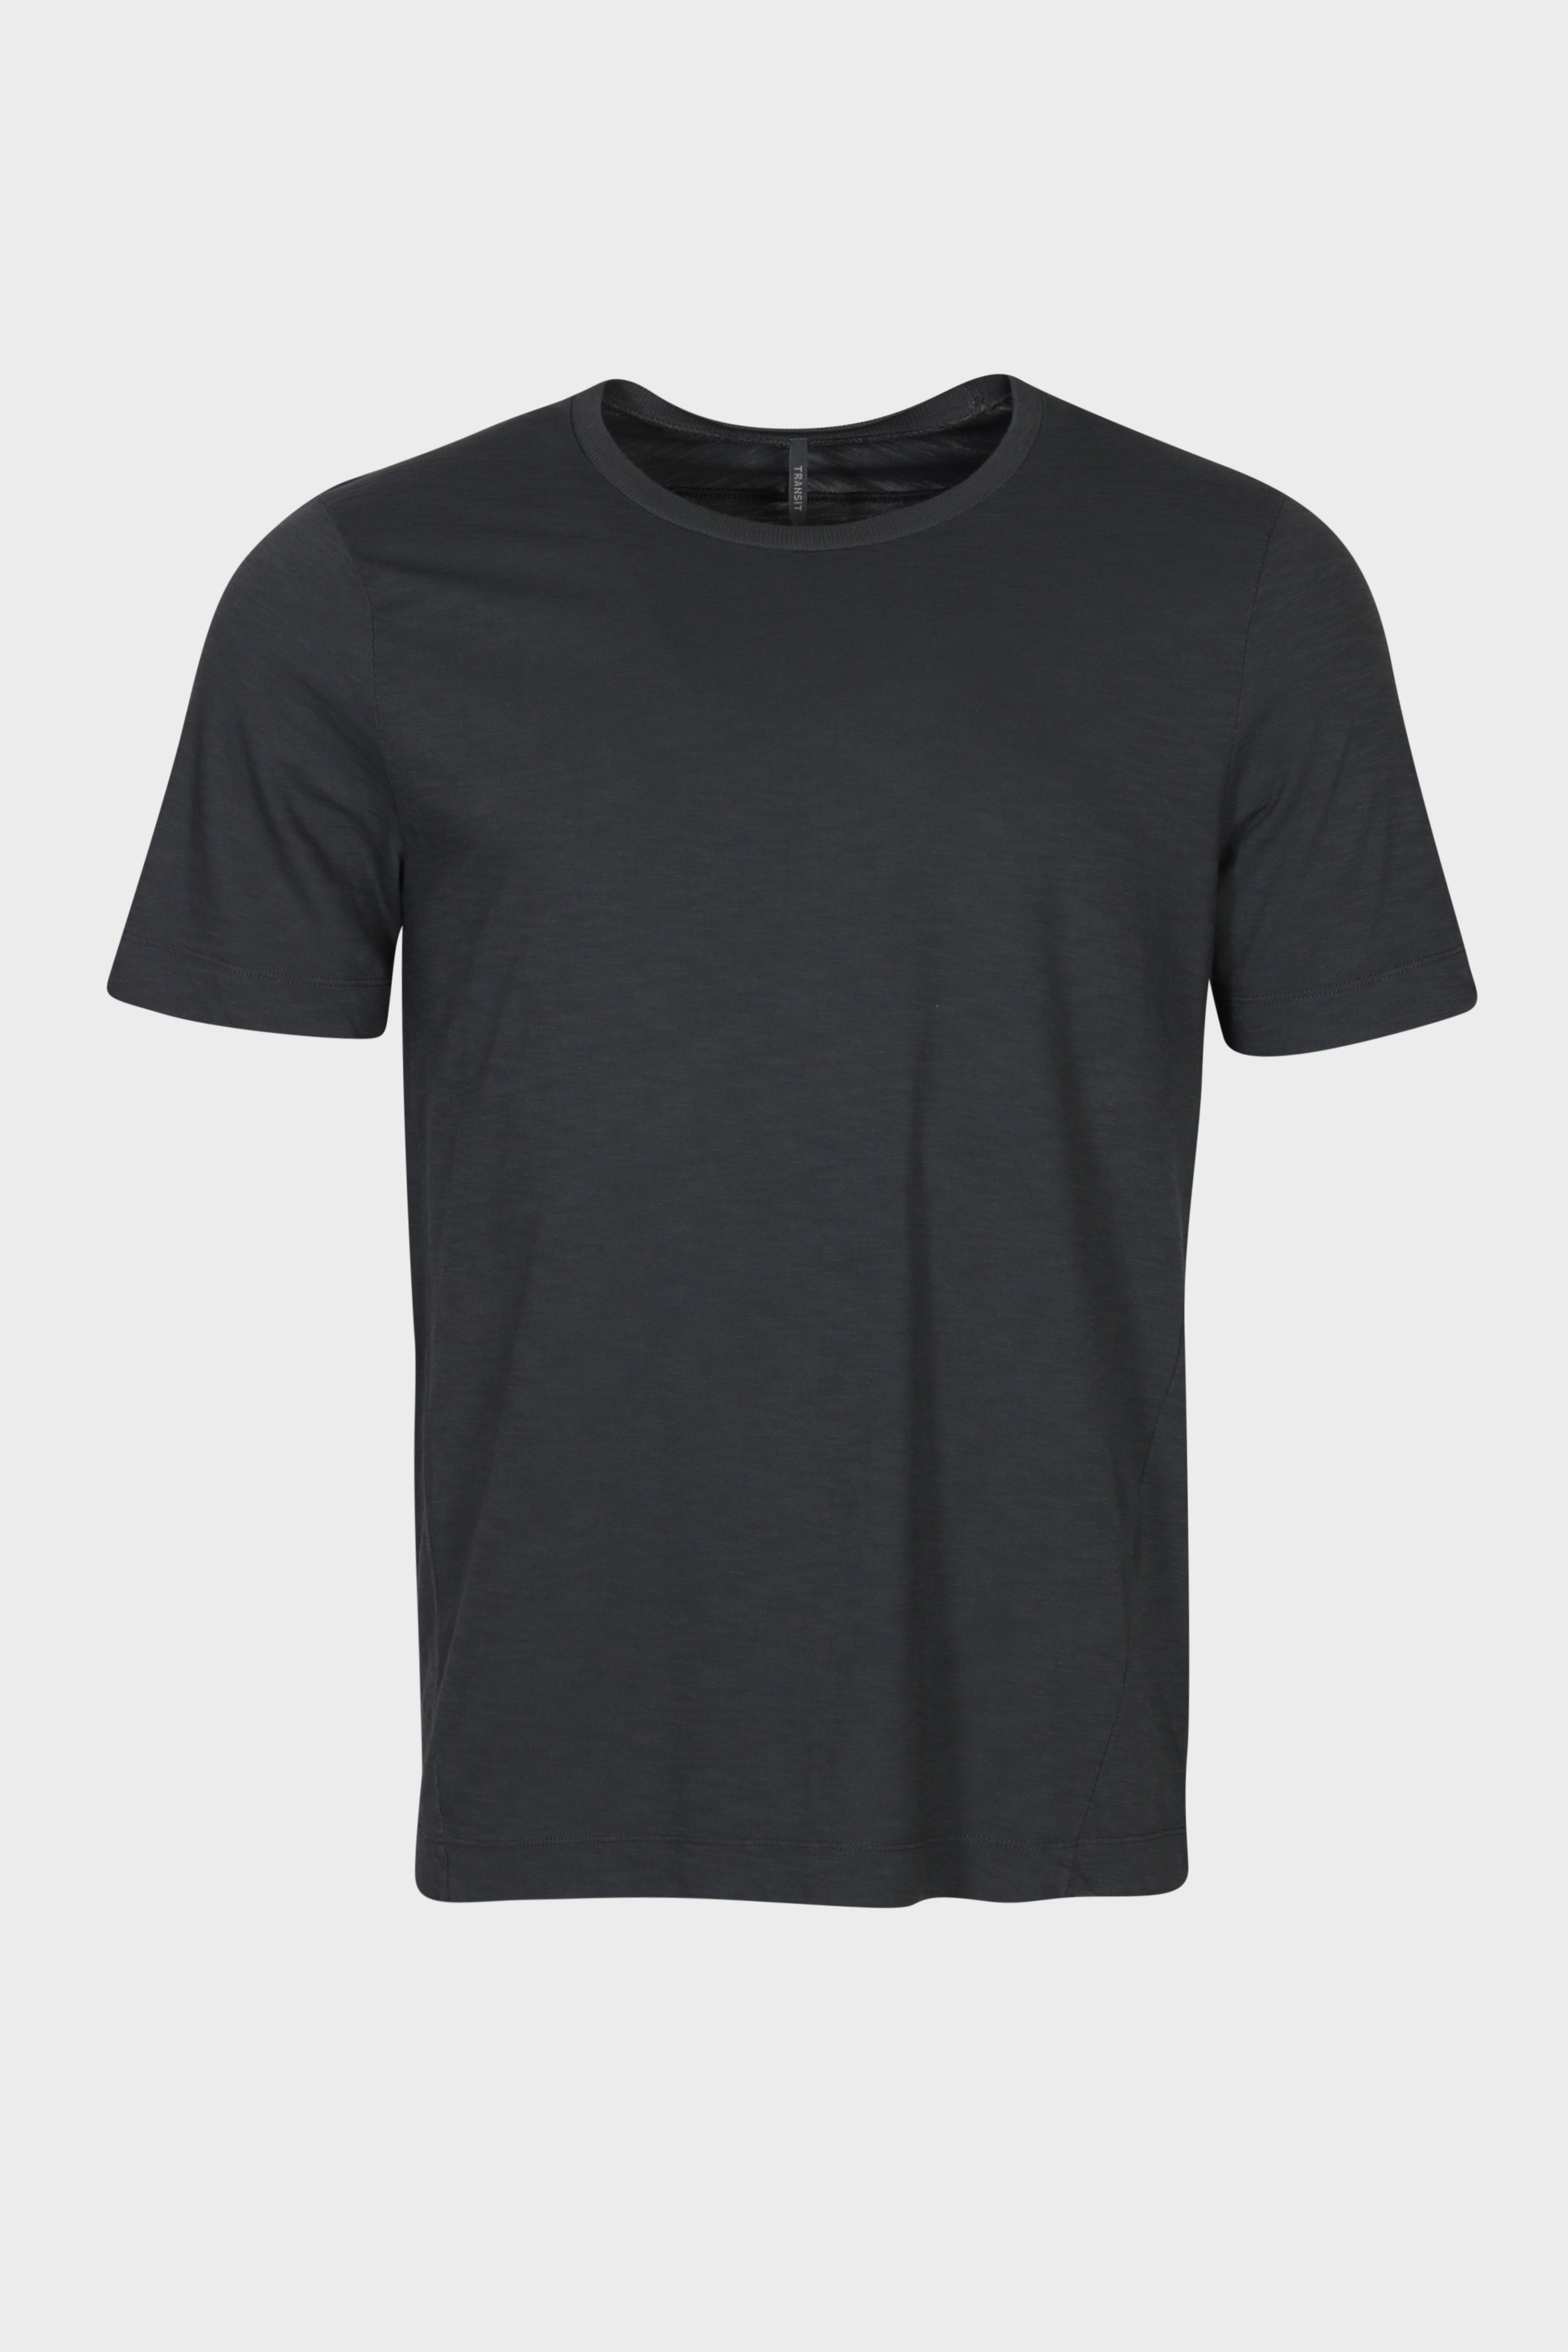 TRANSIT UOMO Cotton T-Shirt in Grey